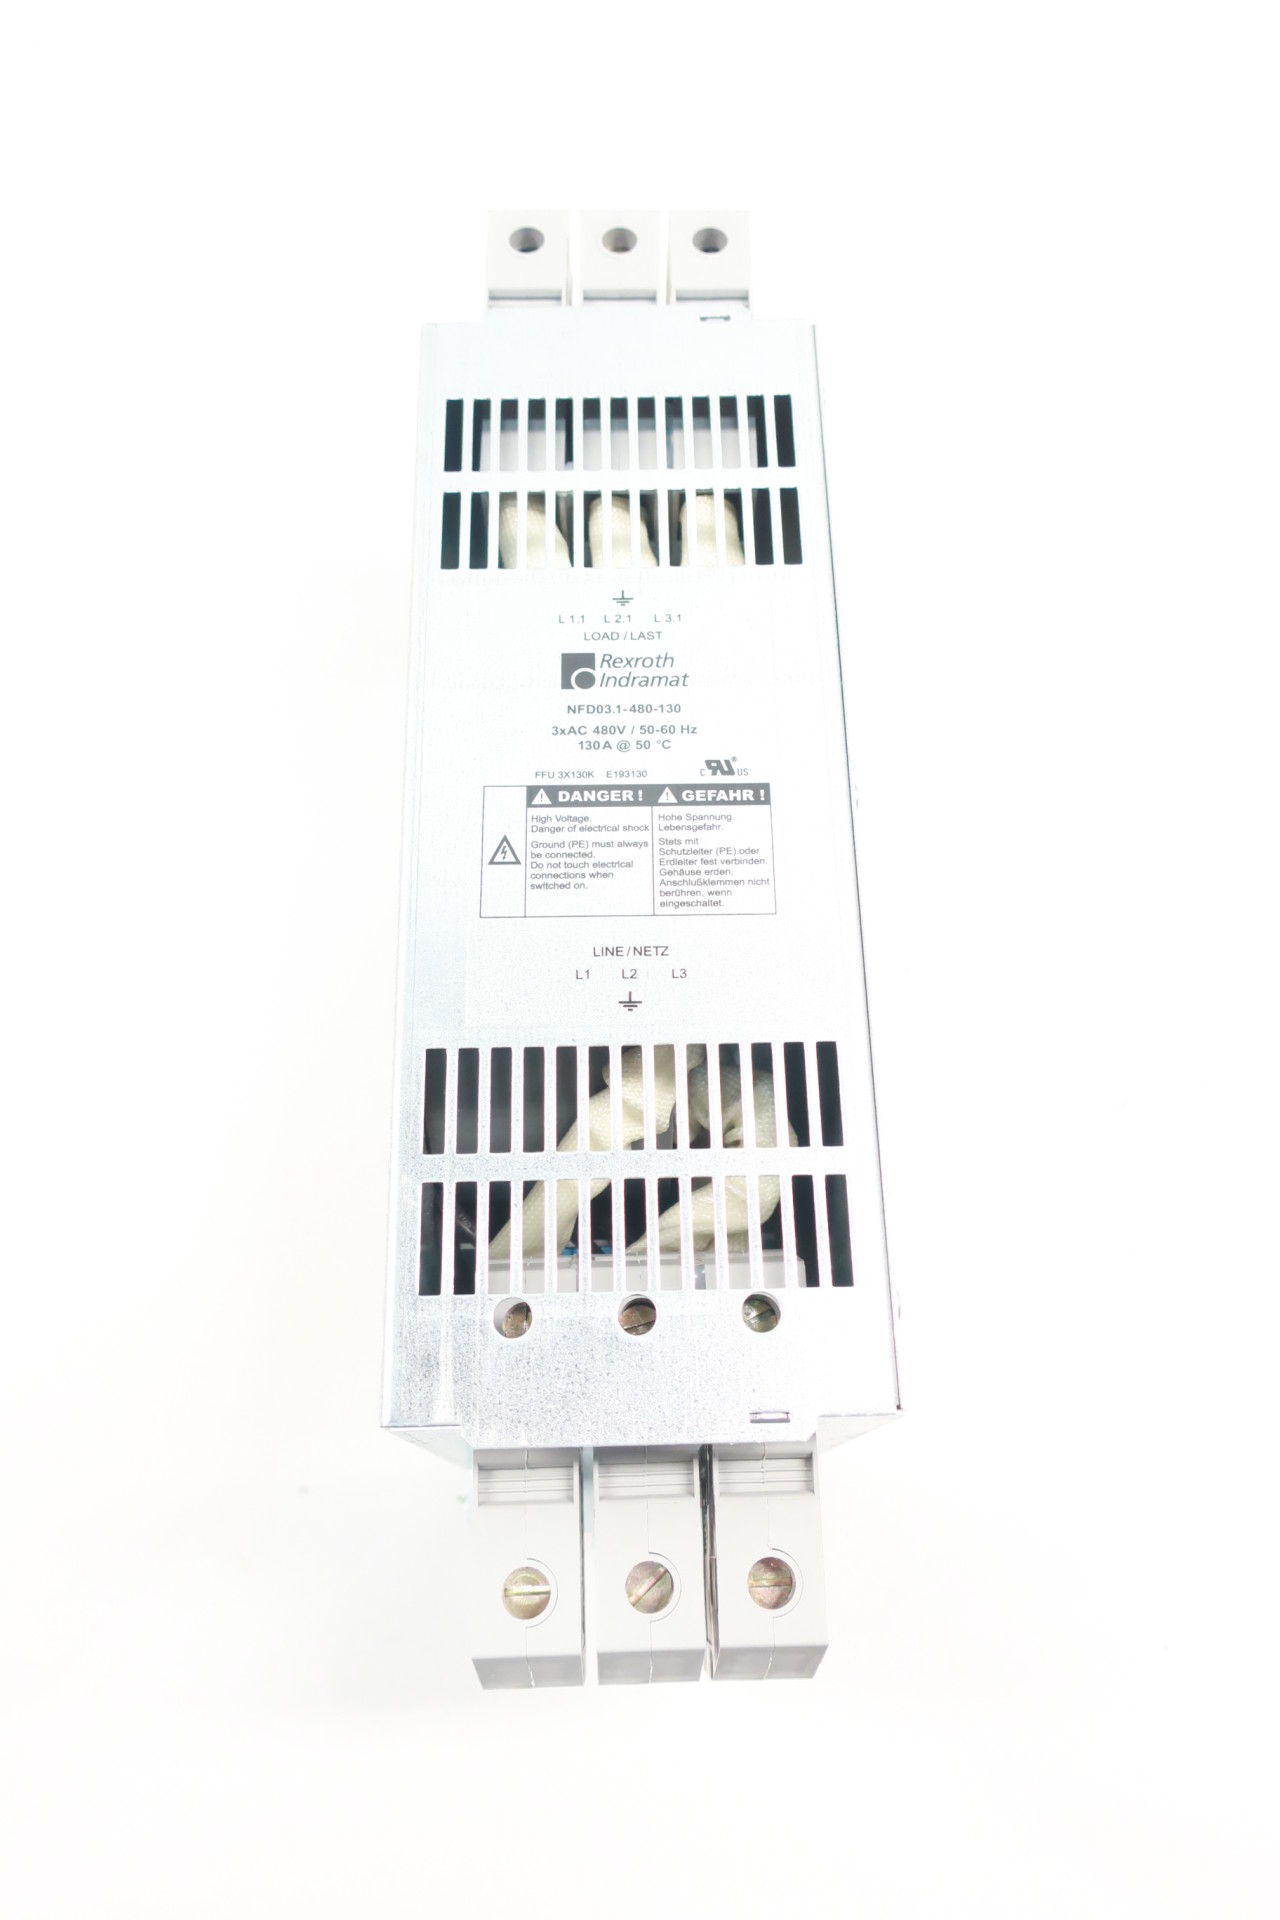 Rexroth NFD03.1-480-055 Power Line Filter 480V 